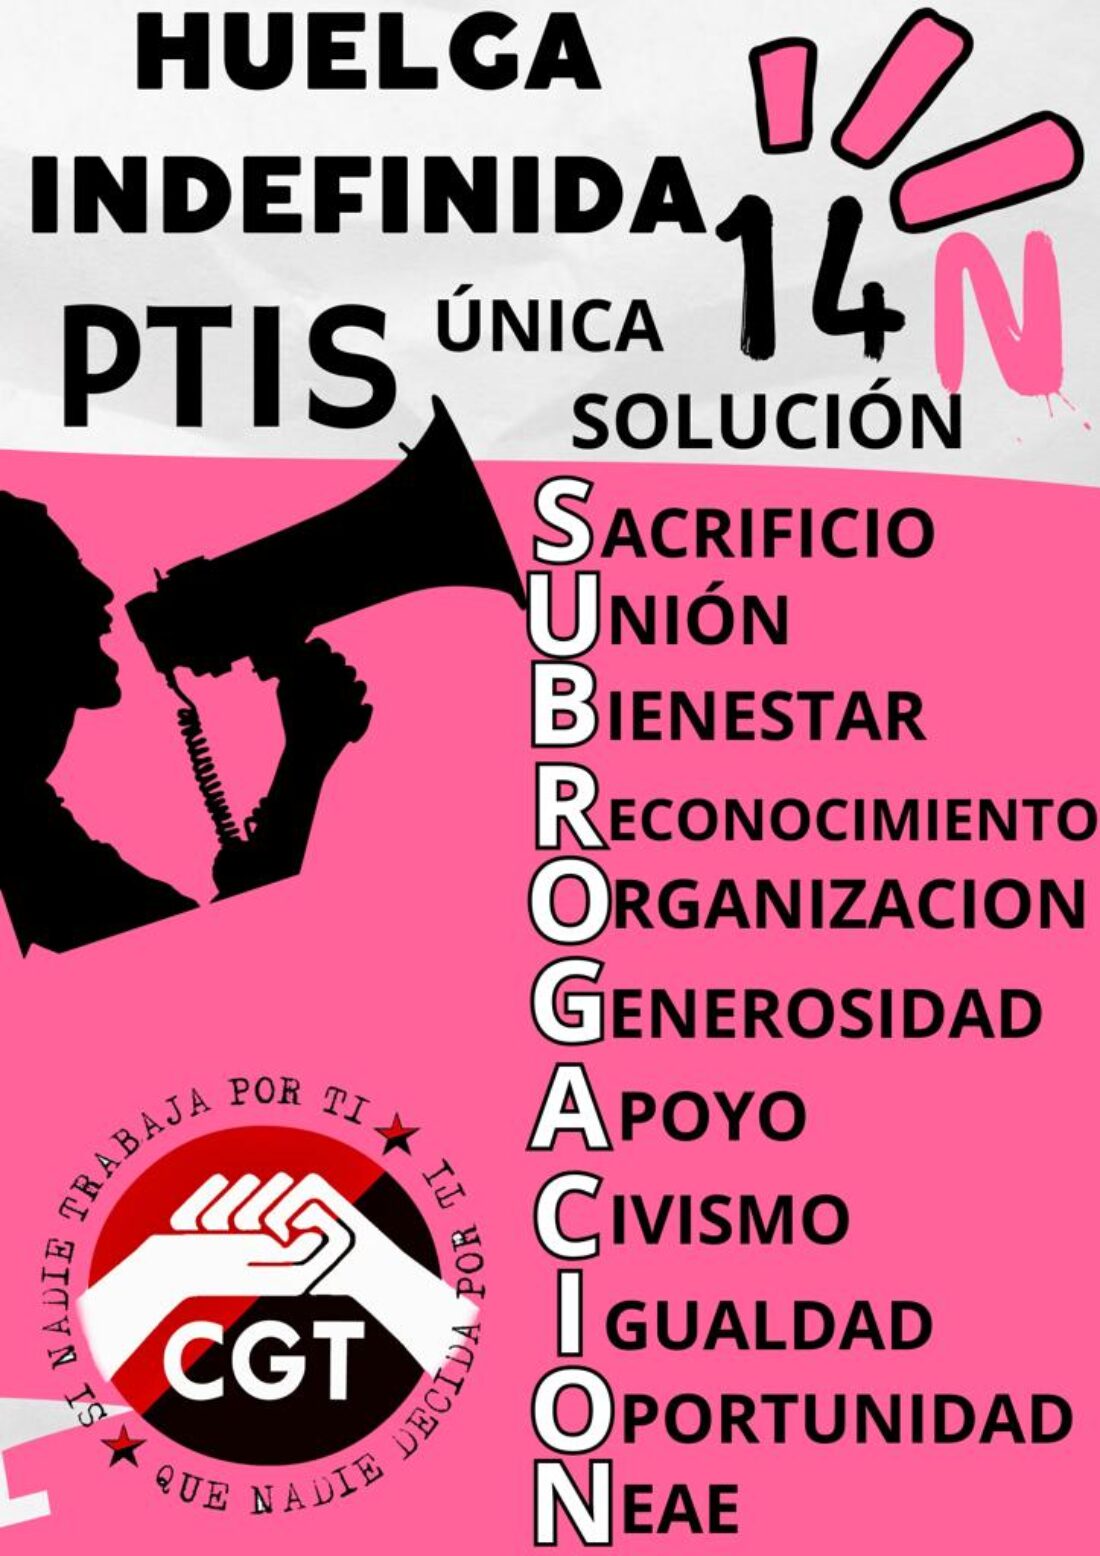 La junta de Andalucía quiere desalojar del encierro al comité de huelga de PTIS